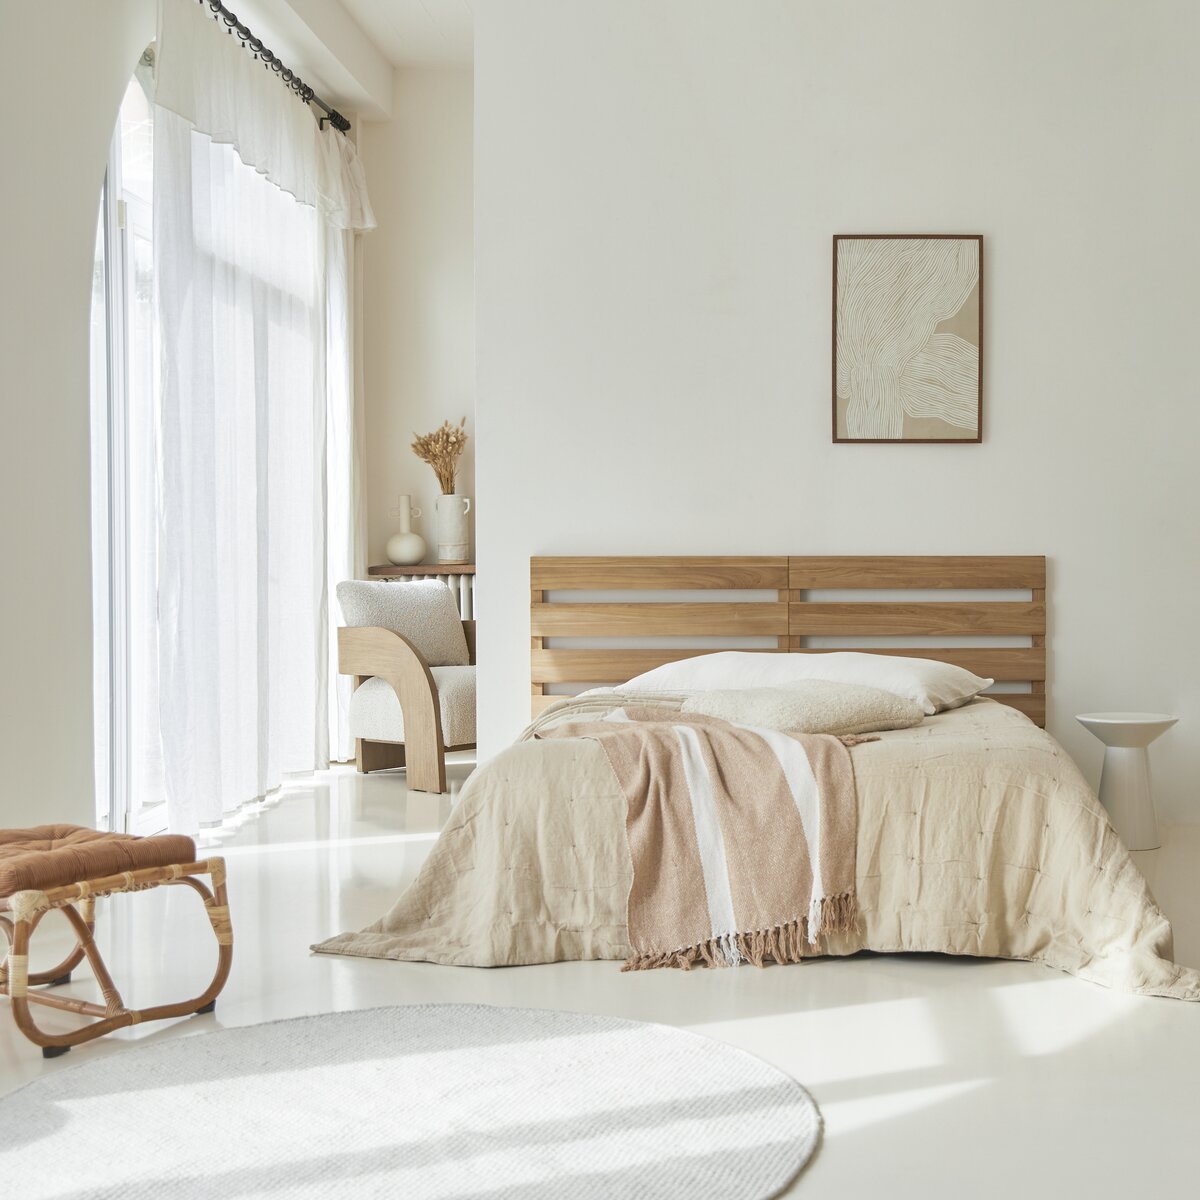 Cabecero de teca de 180 cm Urbain - Mueble para el dormitorio - Tikamoon